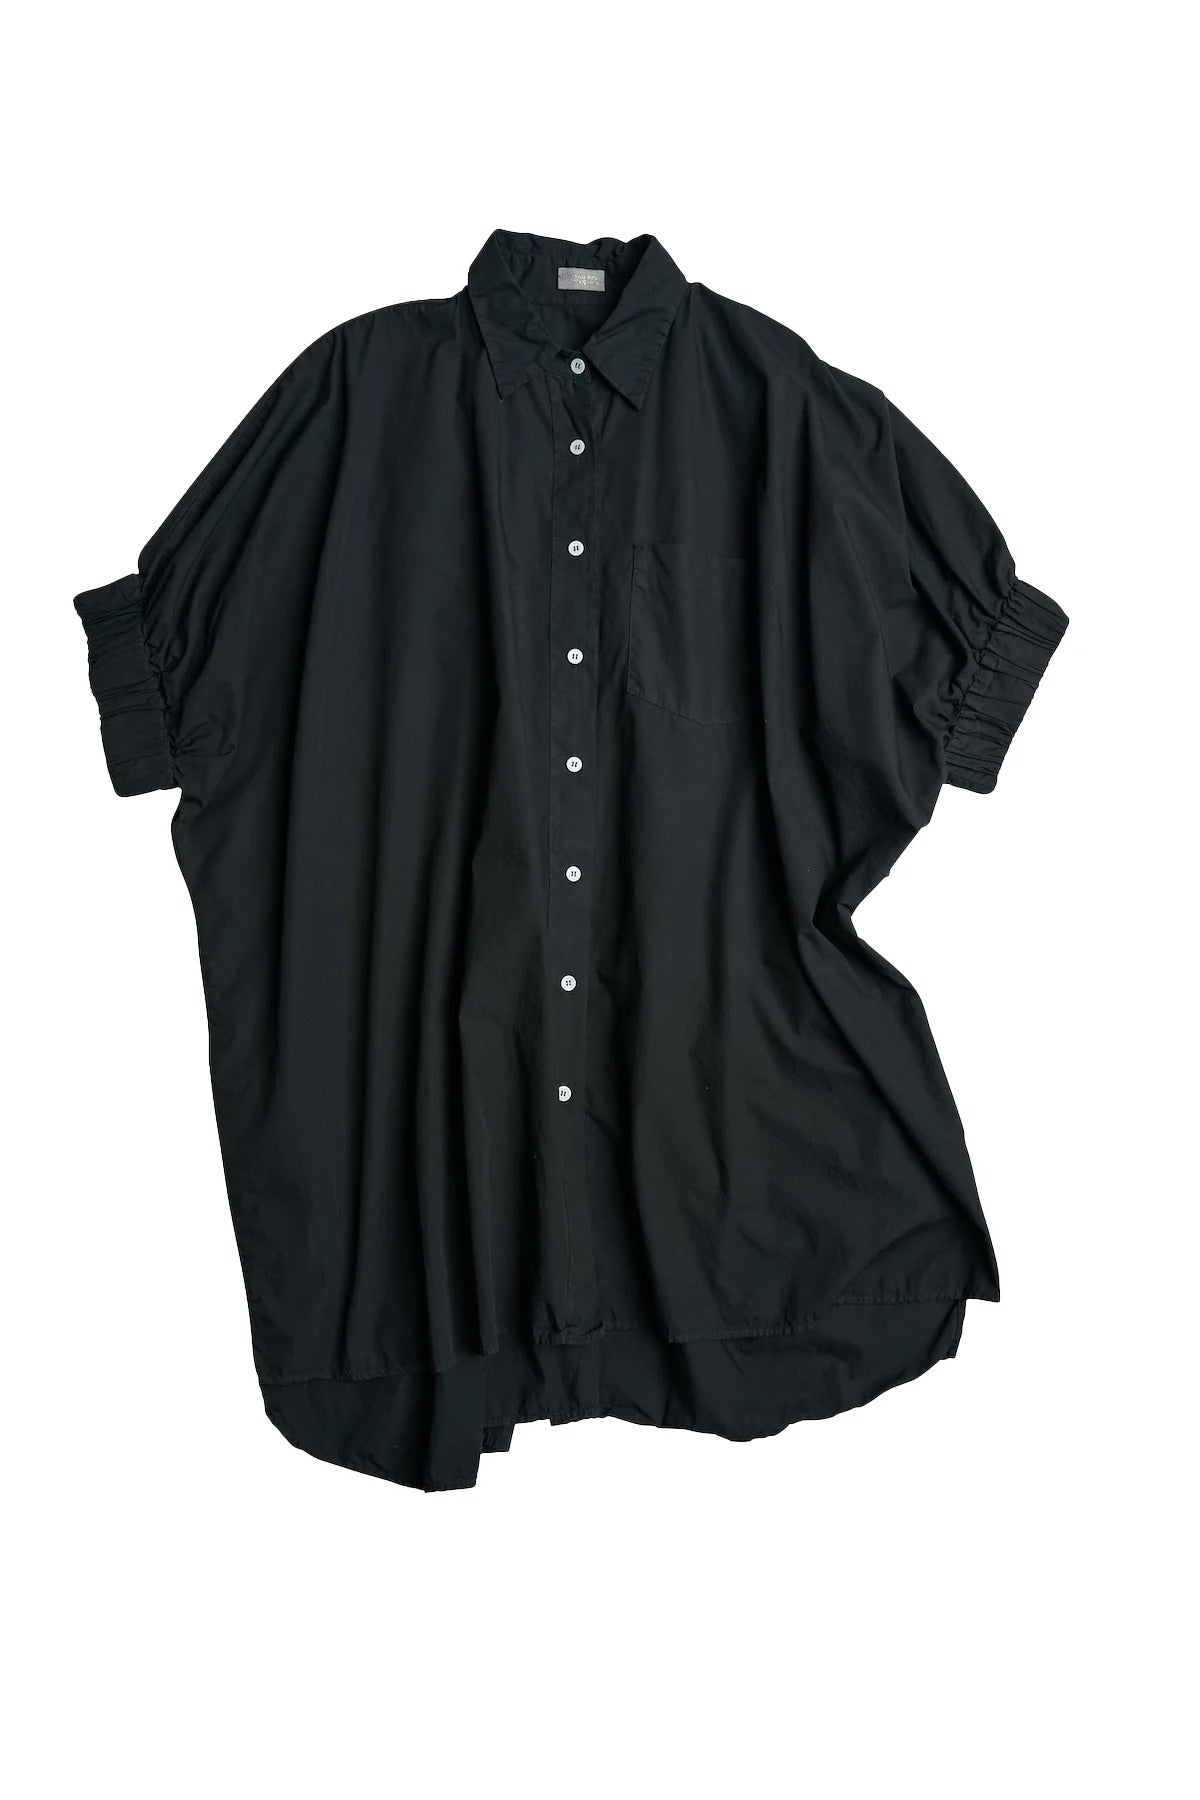 AQC Le Shirt Black